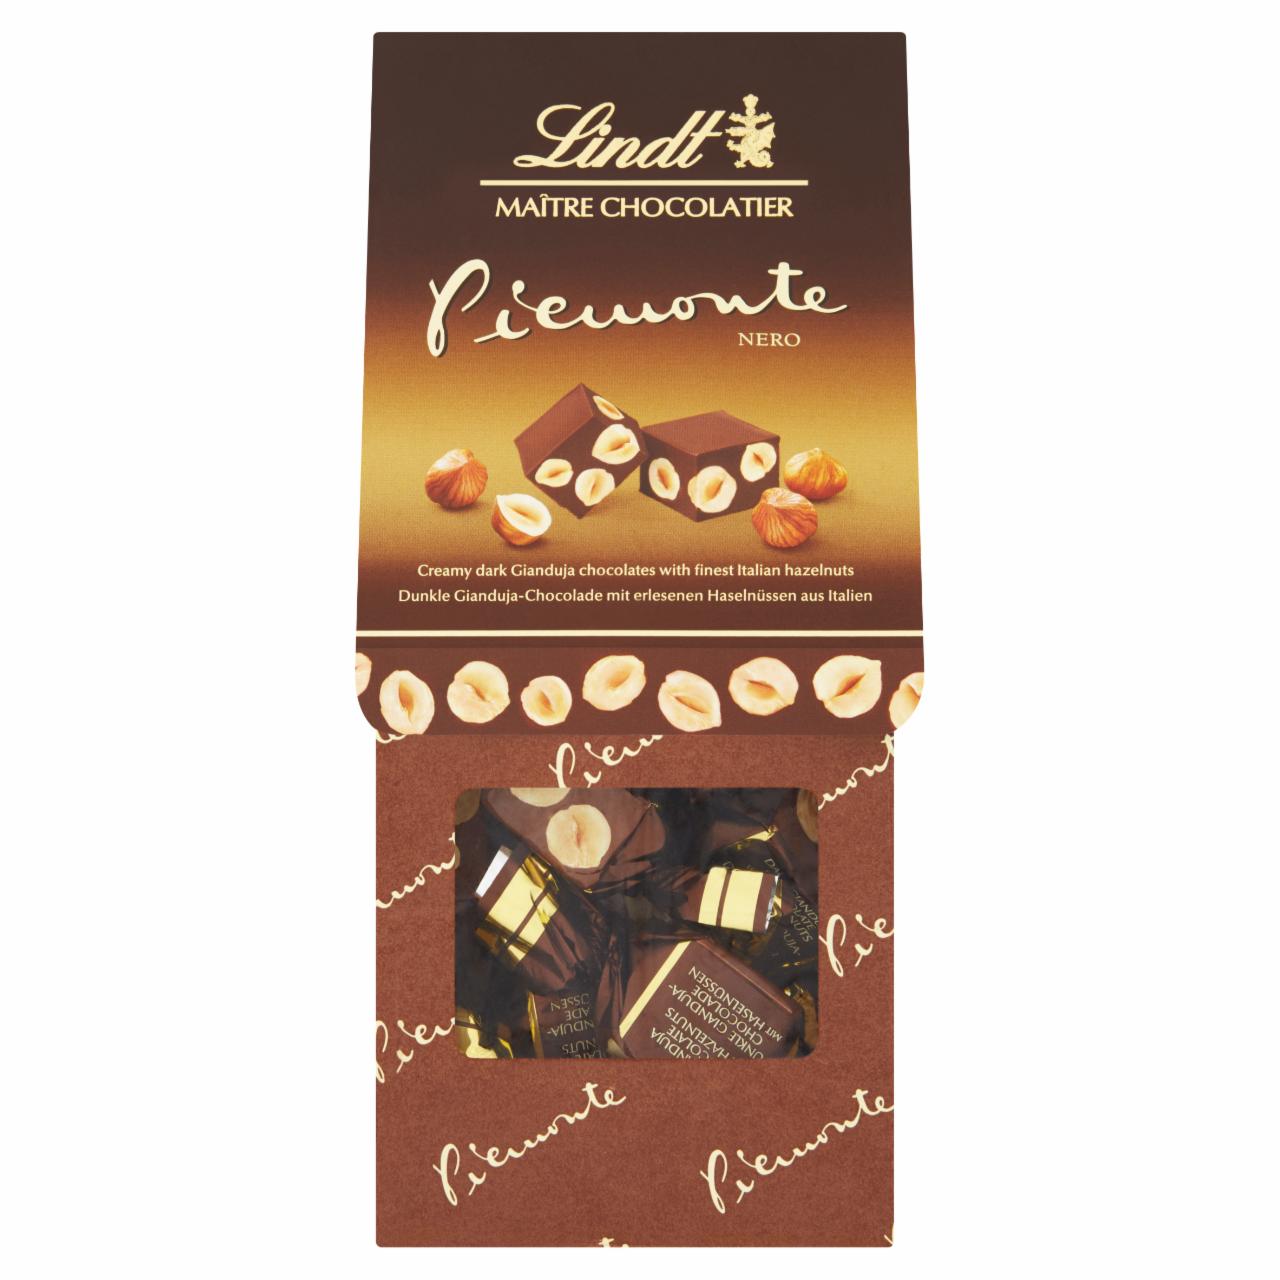 Képek - Lindt gianduja mogyorós csokoládé egész mogyoróval 200 g